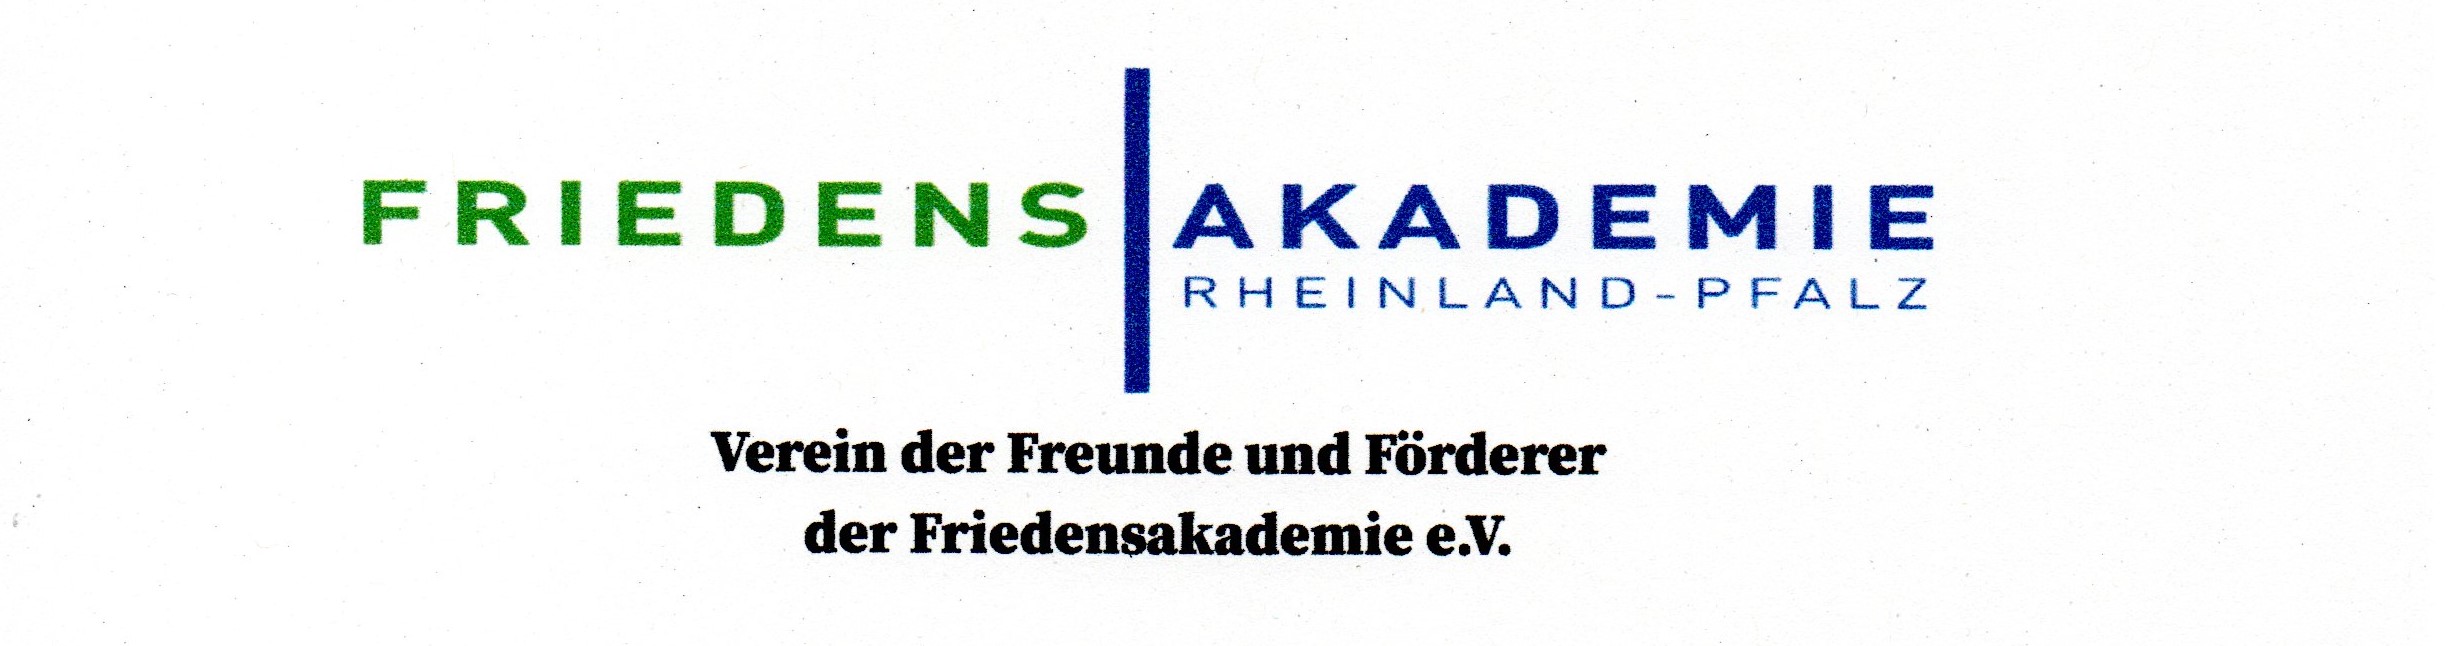 Verein der Freunde und Förderer der Friedensakademie Rheinland-Pfdalz e.V.